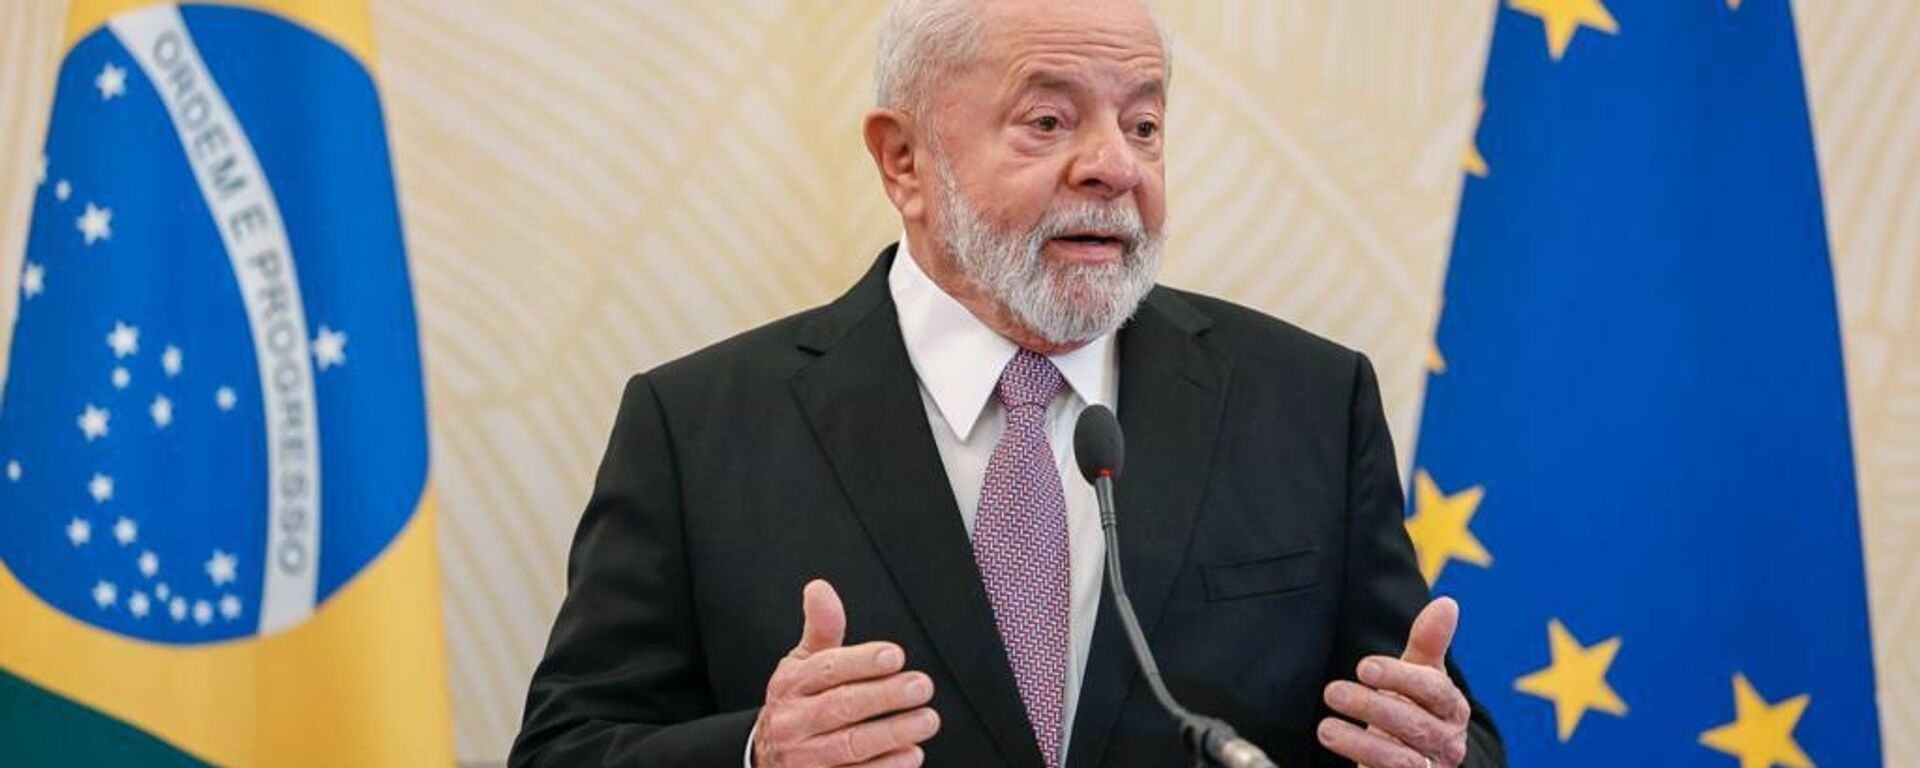 O presidente, Luiz Inácio Lula da Silva, durante coletiva de imprensa, em Bruxelas, na Bélgica, 19 de julho de 2023 - Sputnik Brasil, 1920, 19.07.2023